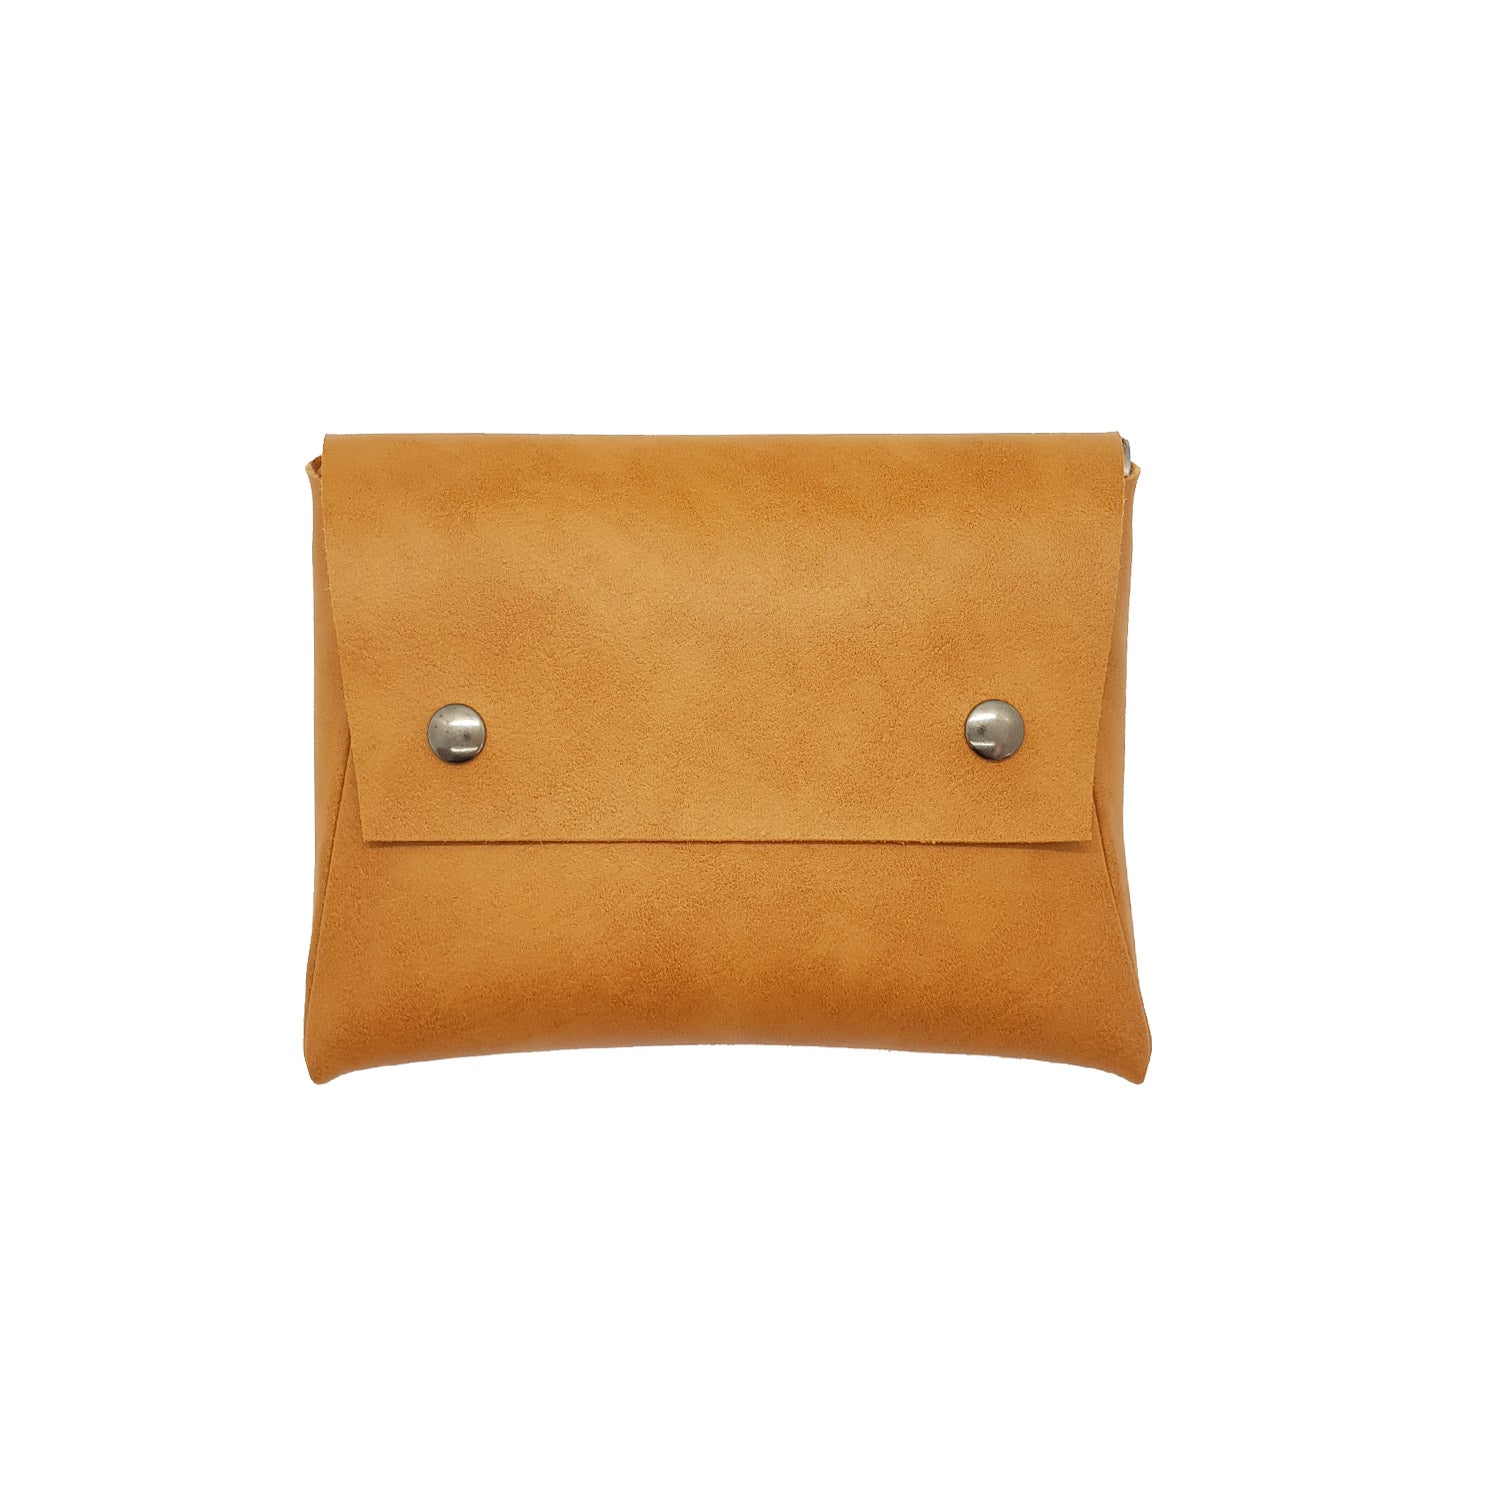 Basel Pouch - Premium Pouch - Clutch - Shoulder Bag from L&E Studio